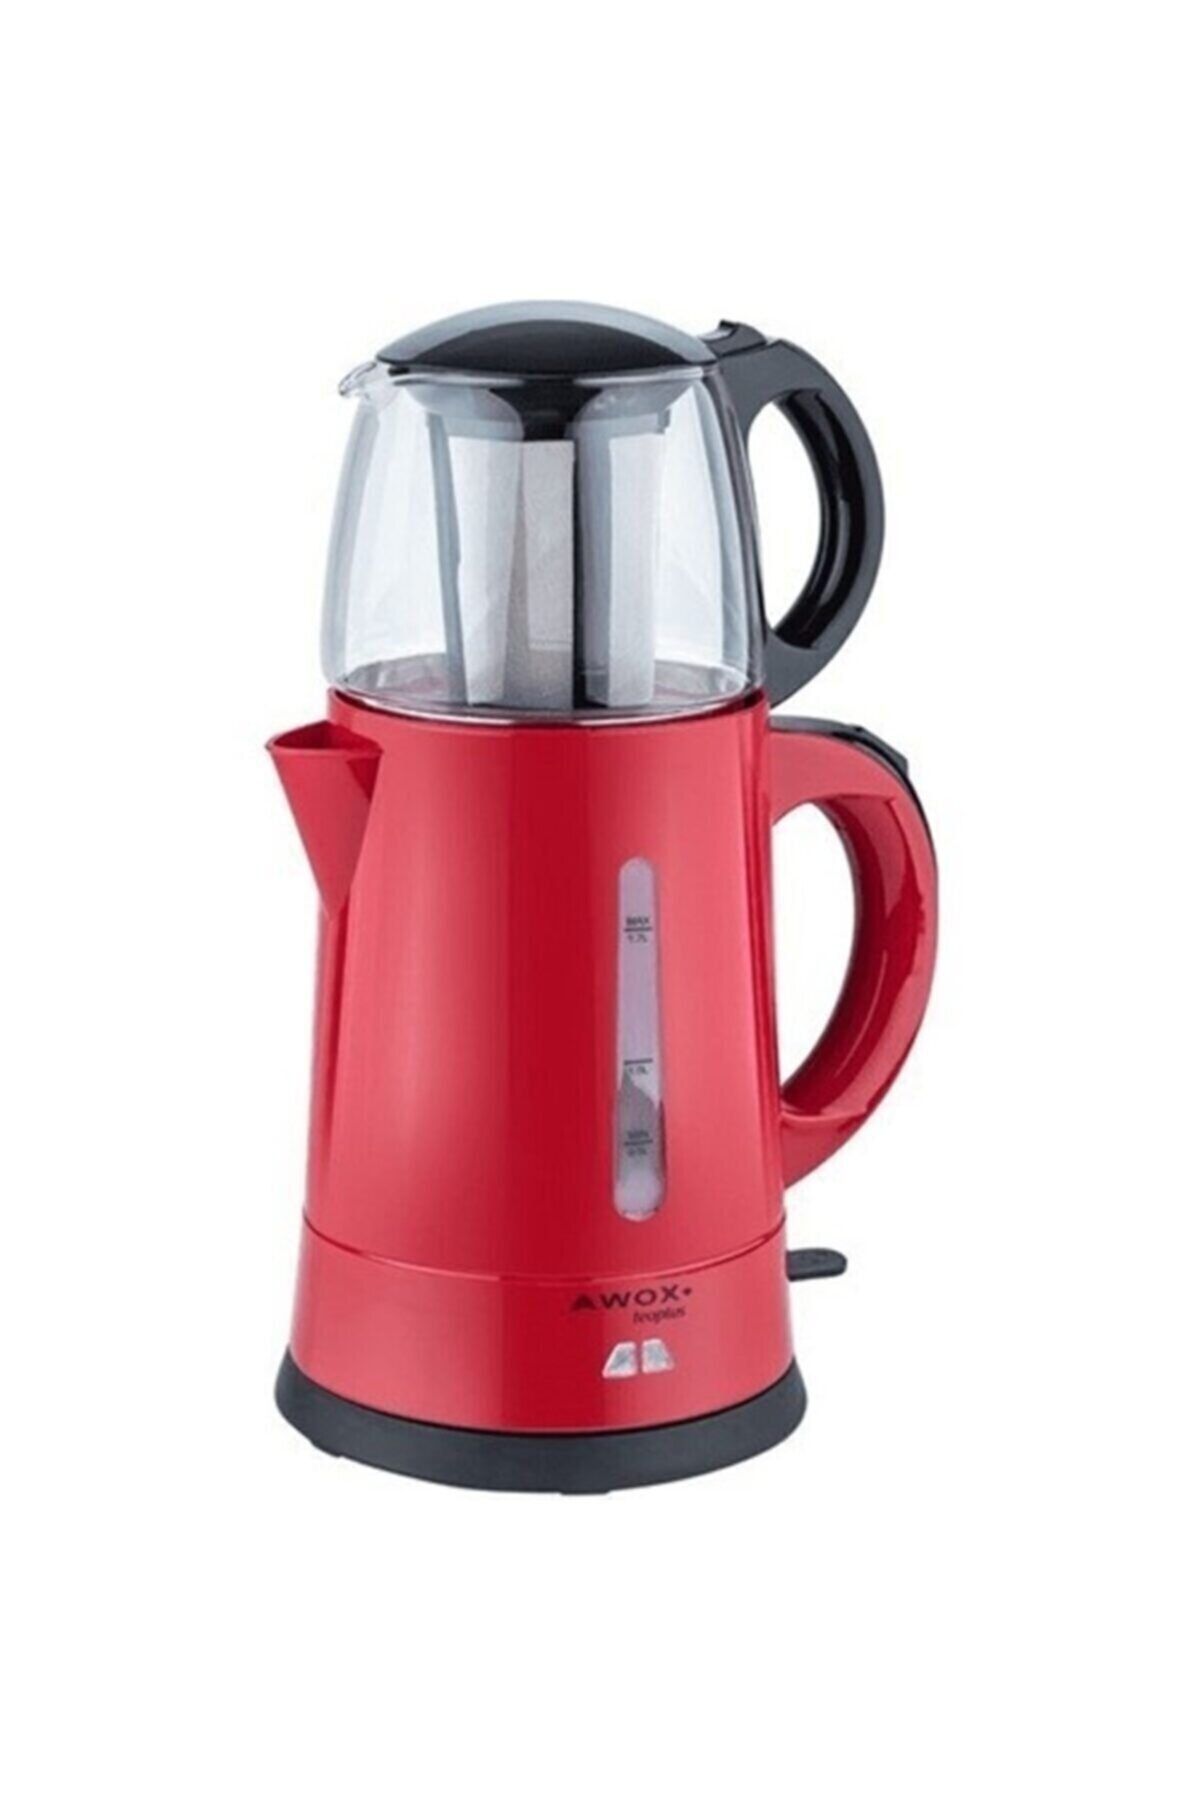 AWOX Teaplus Kırmızı Elektrikli Cam Demlikli Çaycı Çay Çakinesi Teaplus